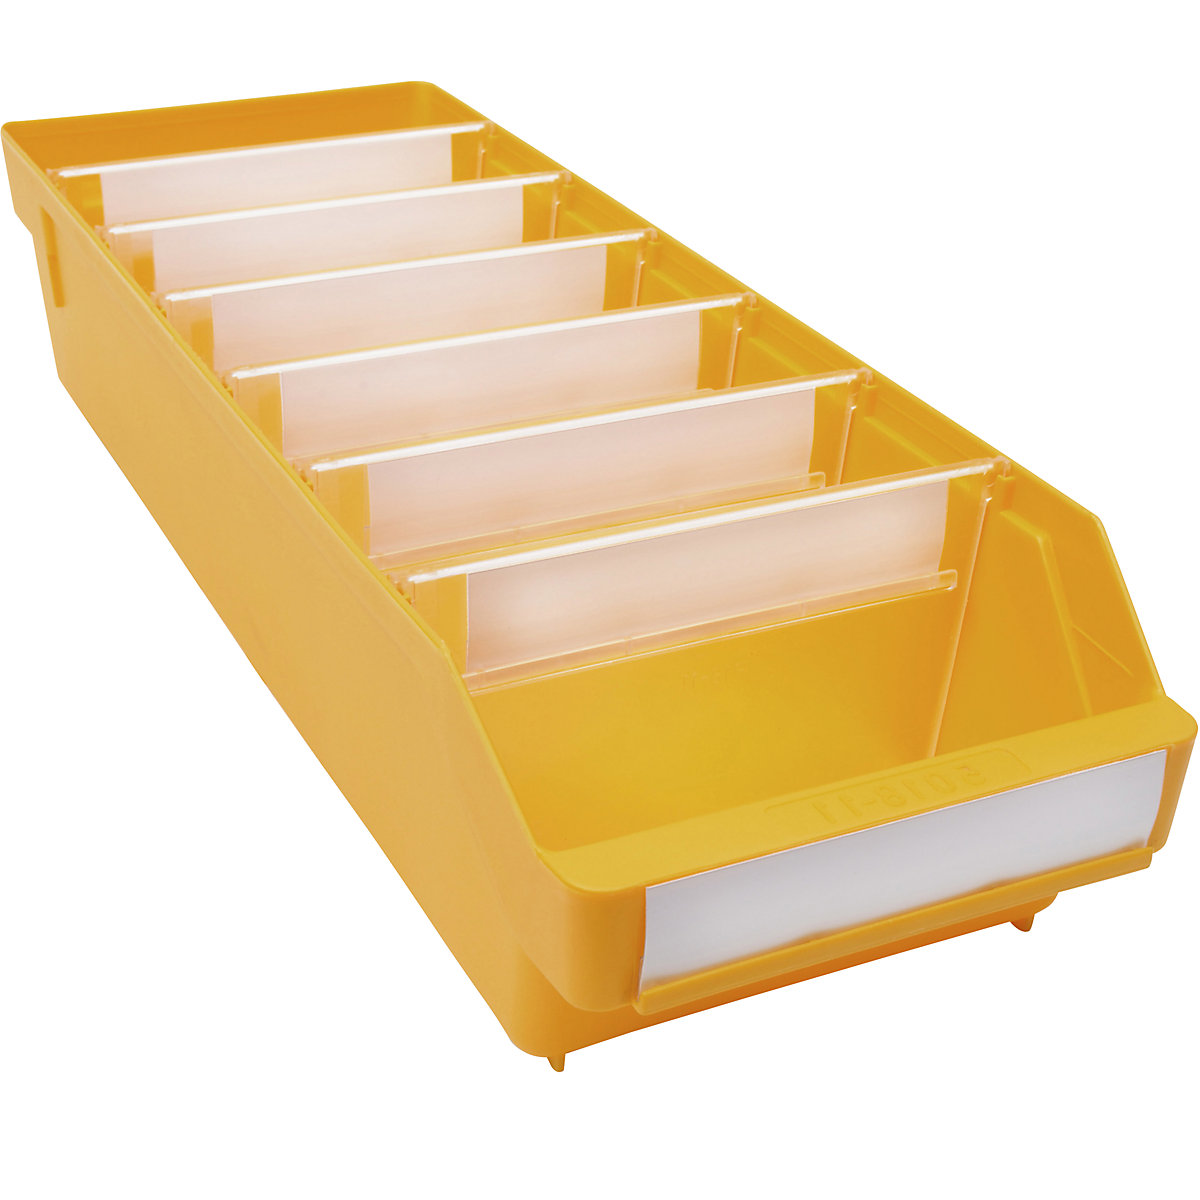 Bac de stockage en polypropylène résistant aux chocs – STEMO, coloris jaune, L x l x h 500 x 180 x 110 mm, lot de 20-11